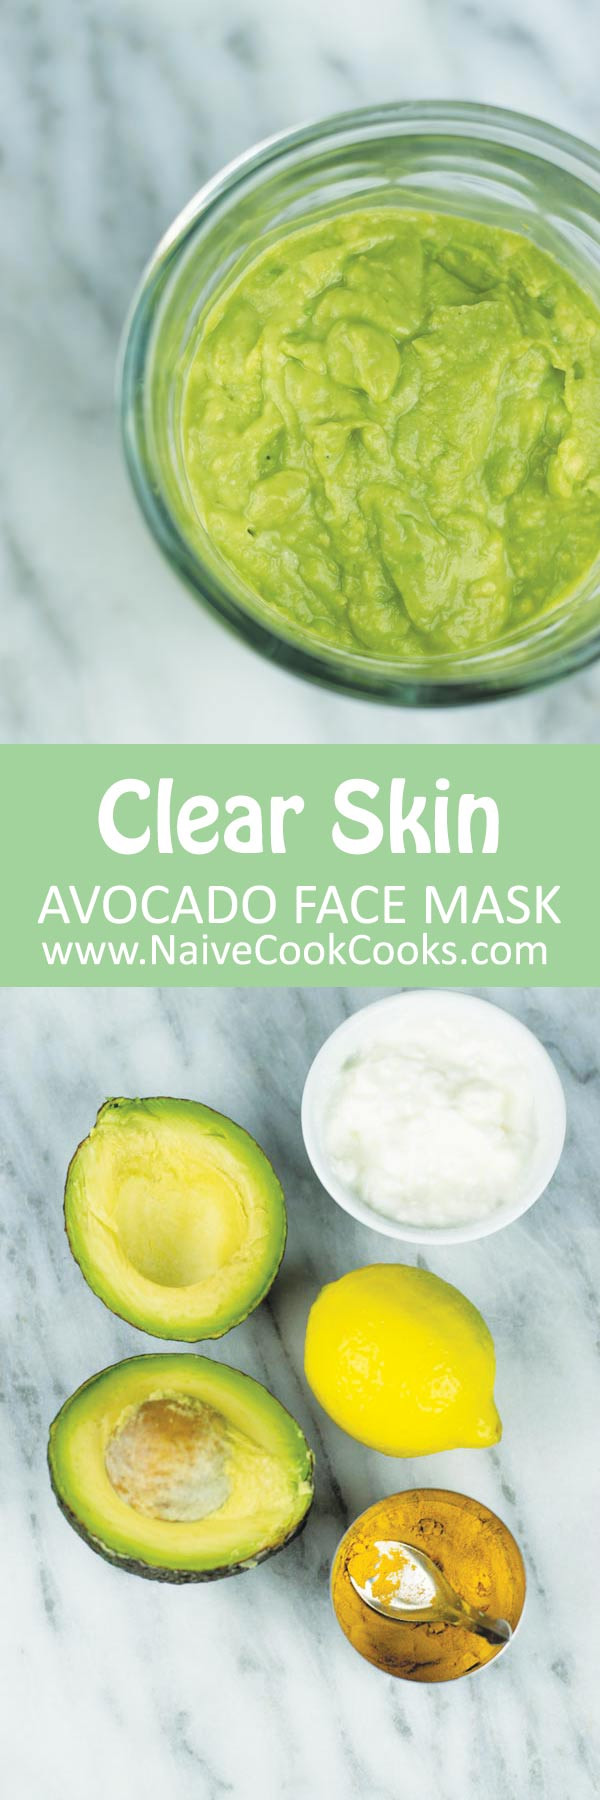 DIY Avocado Face Mask
 Avocado Face Mask